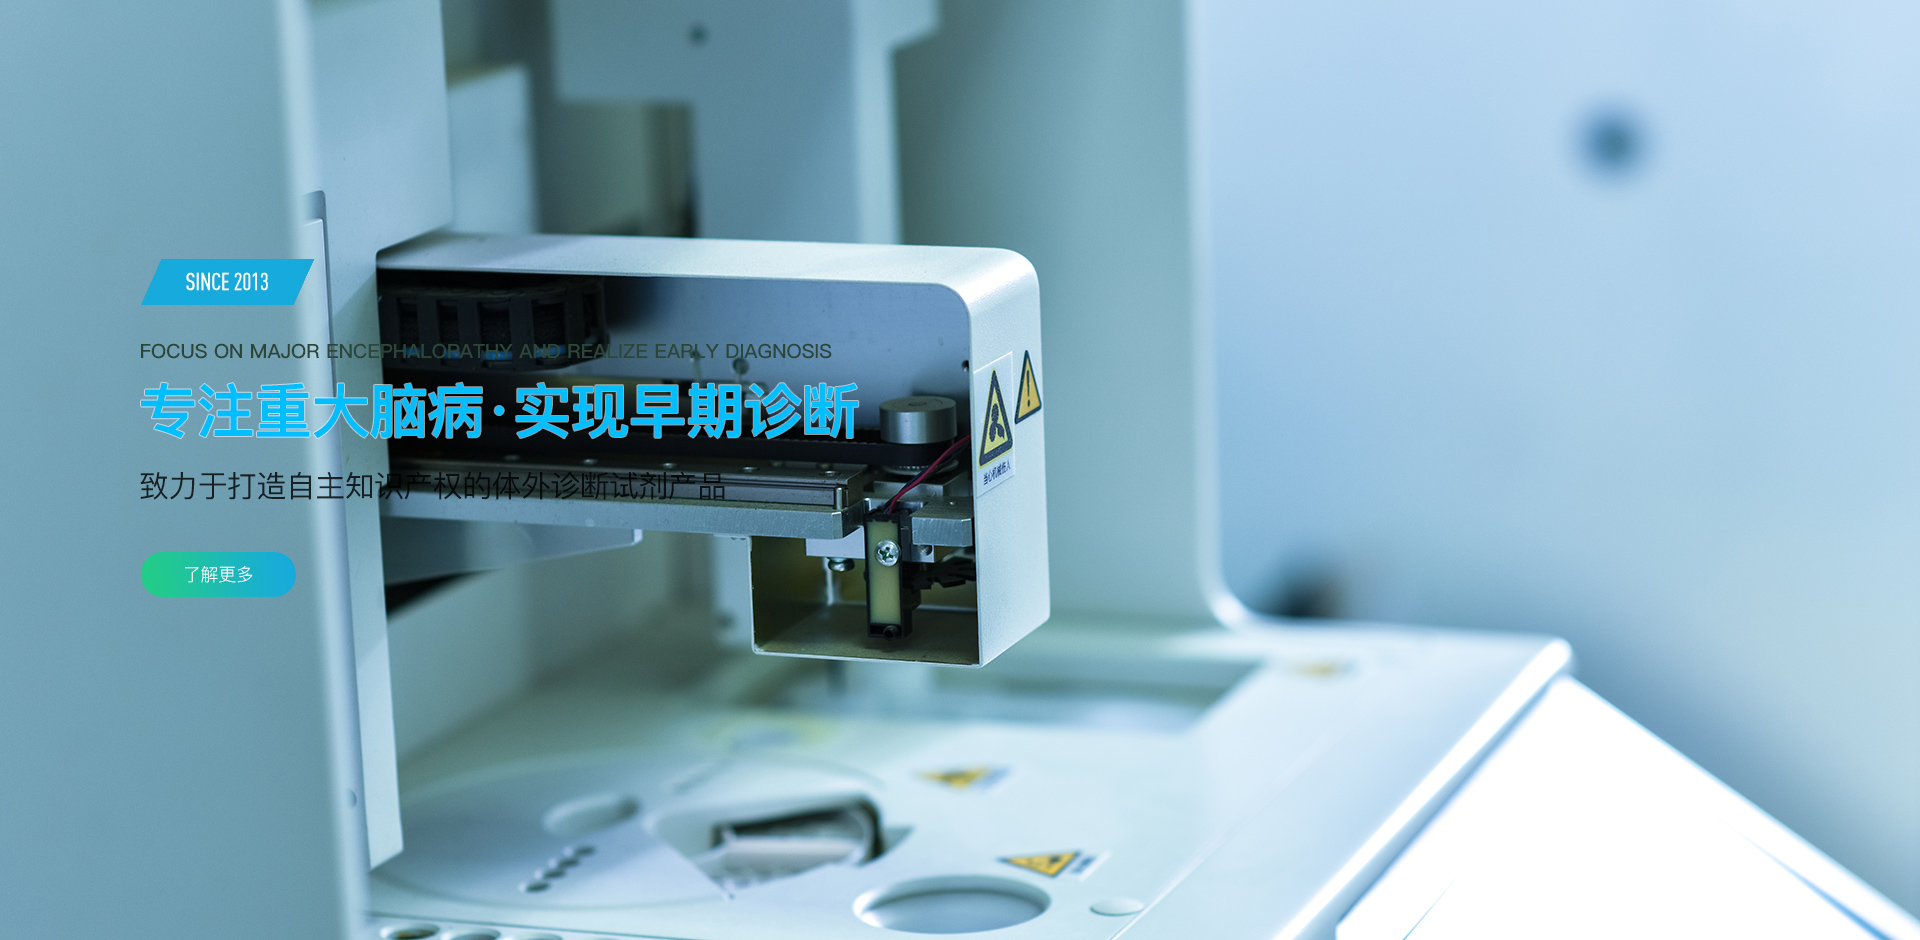 北京尊龙凯时 、北京尊龙凯时生物科技有限公司 、纳米颗粒跟踪分析仪 、电化学发光 、流式荧光 、流式细胞仪